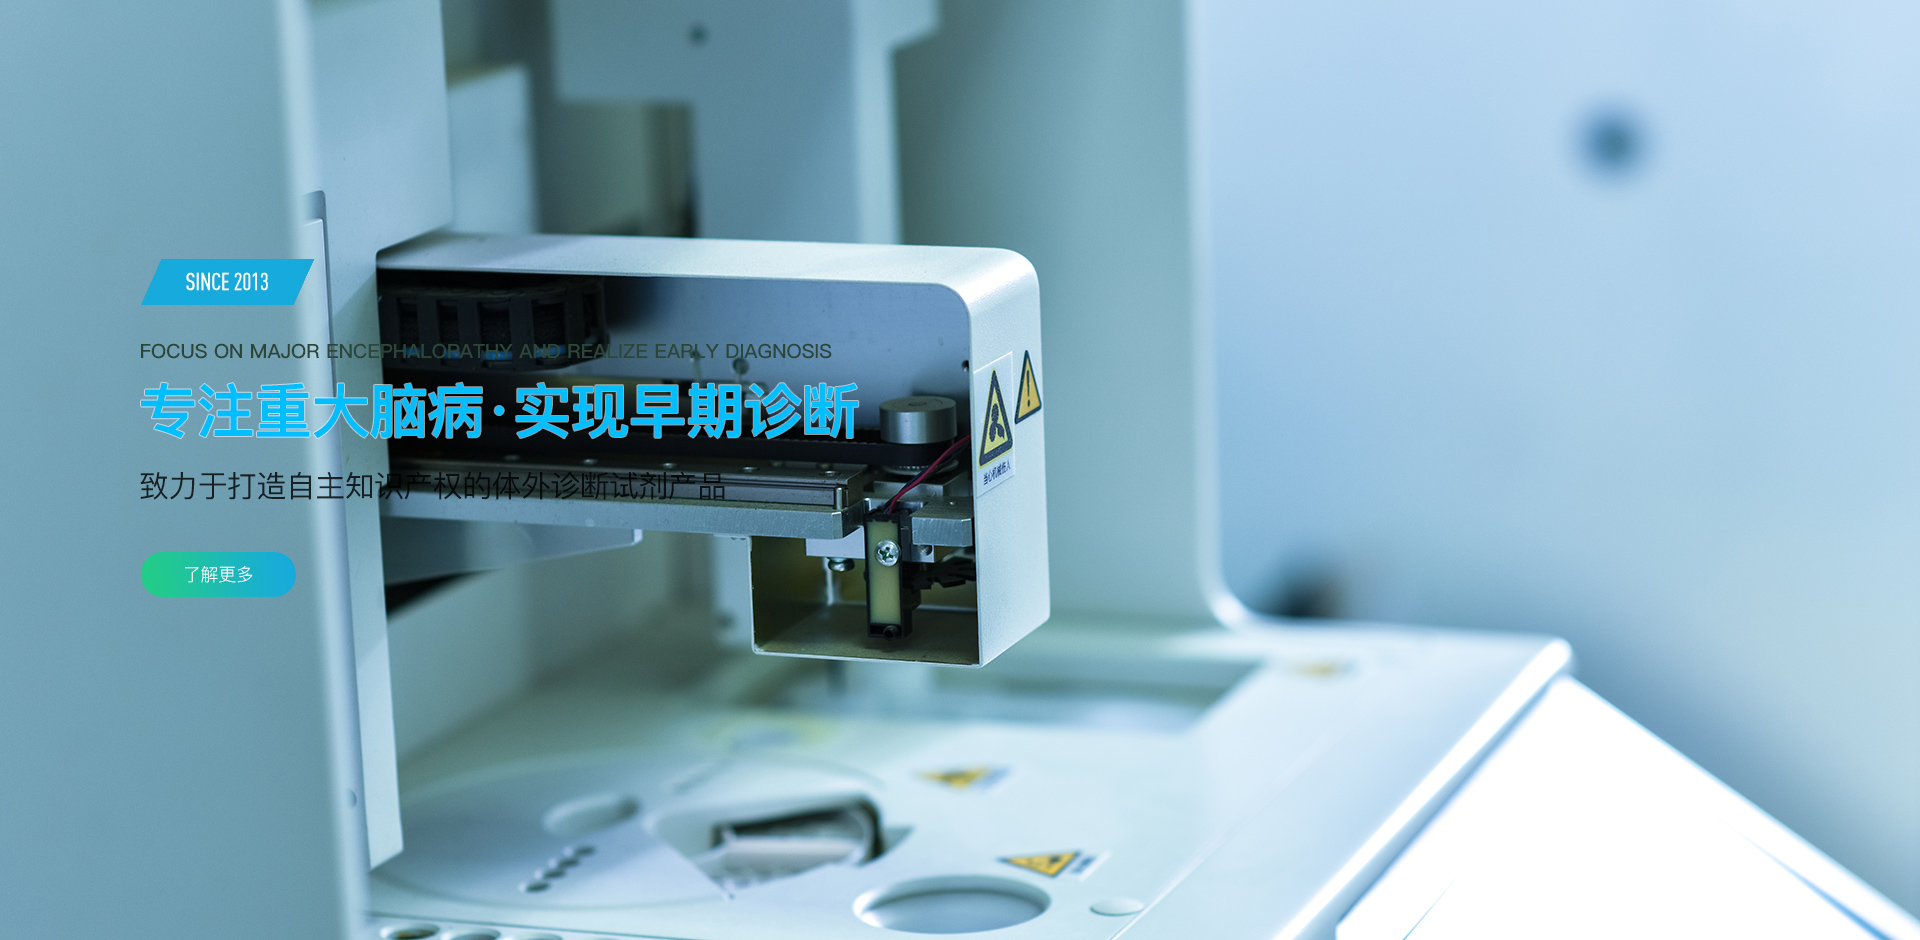 北京尊龙凯时 、北京尊龙凯时生物科技有限公司 、纳米颗粒跟踪分析仪 、电化学发光 、流式荧光 、流式细胞仪